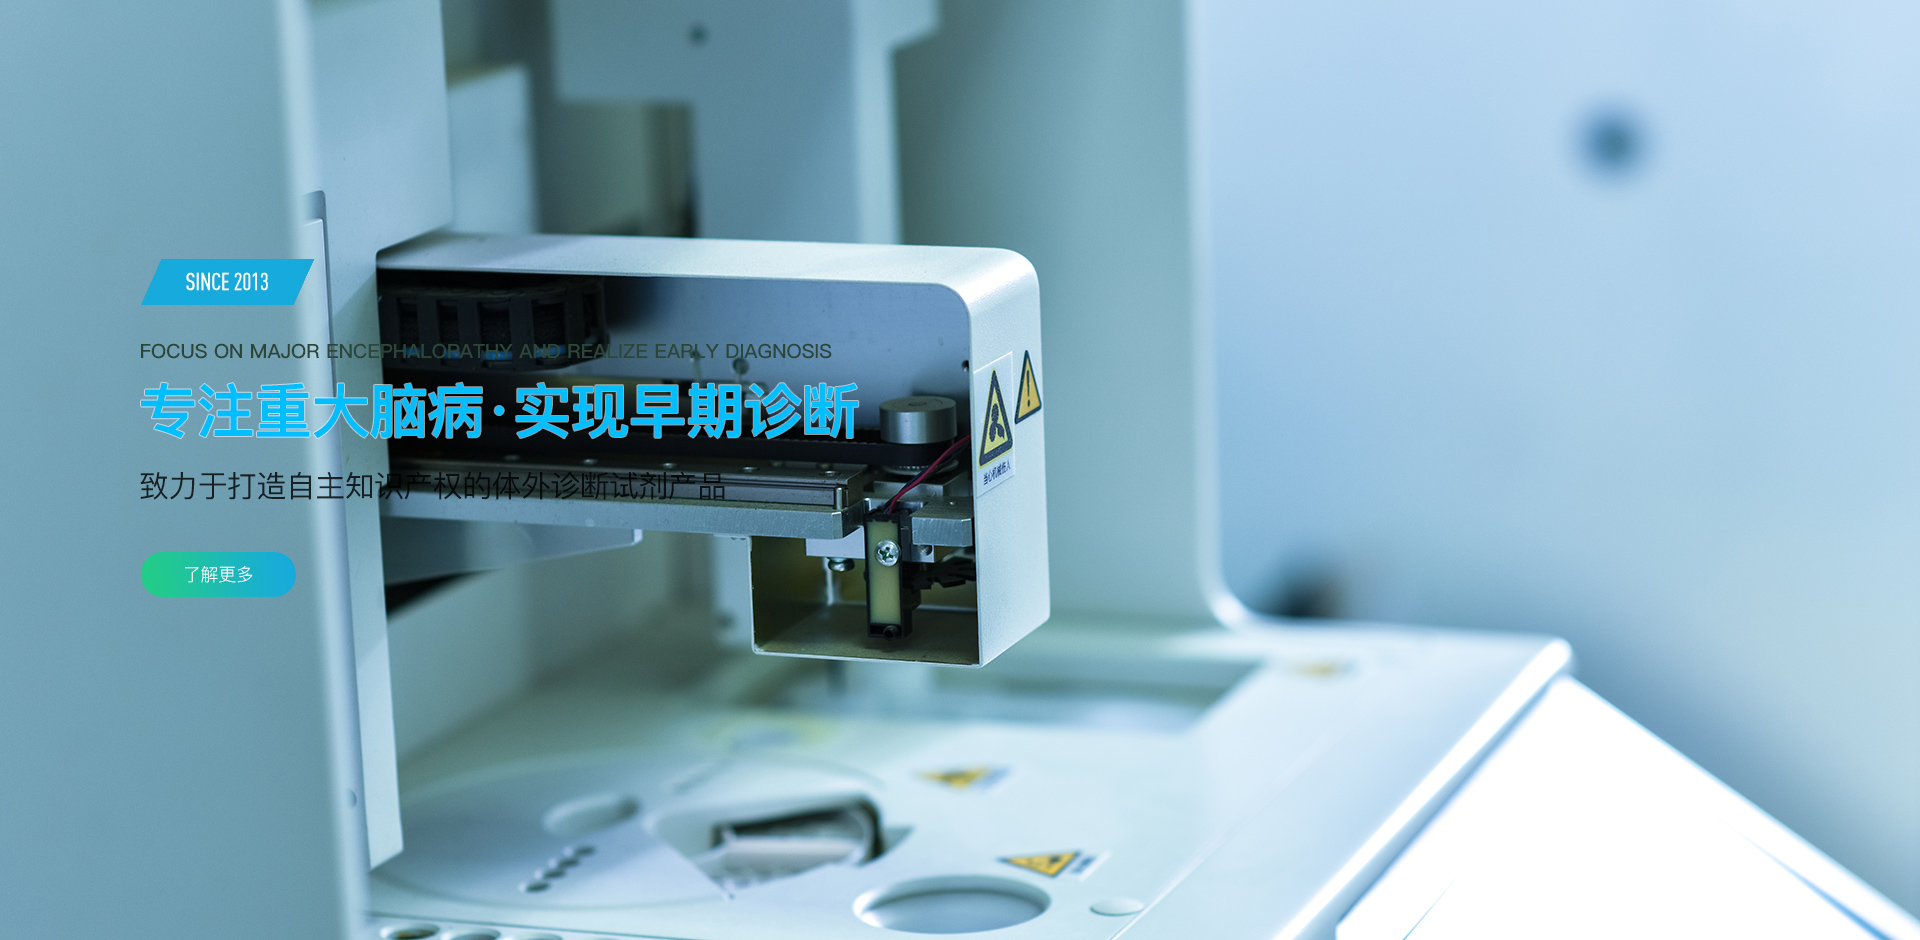 北京尊龙凯时 、北京尊龙凯时生物科技有限公司 、纳米颗粒跟踪分析仪 、电化学发光 、流式荧光 、流式细胞仪